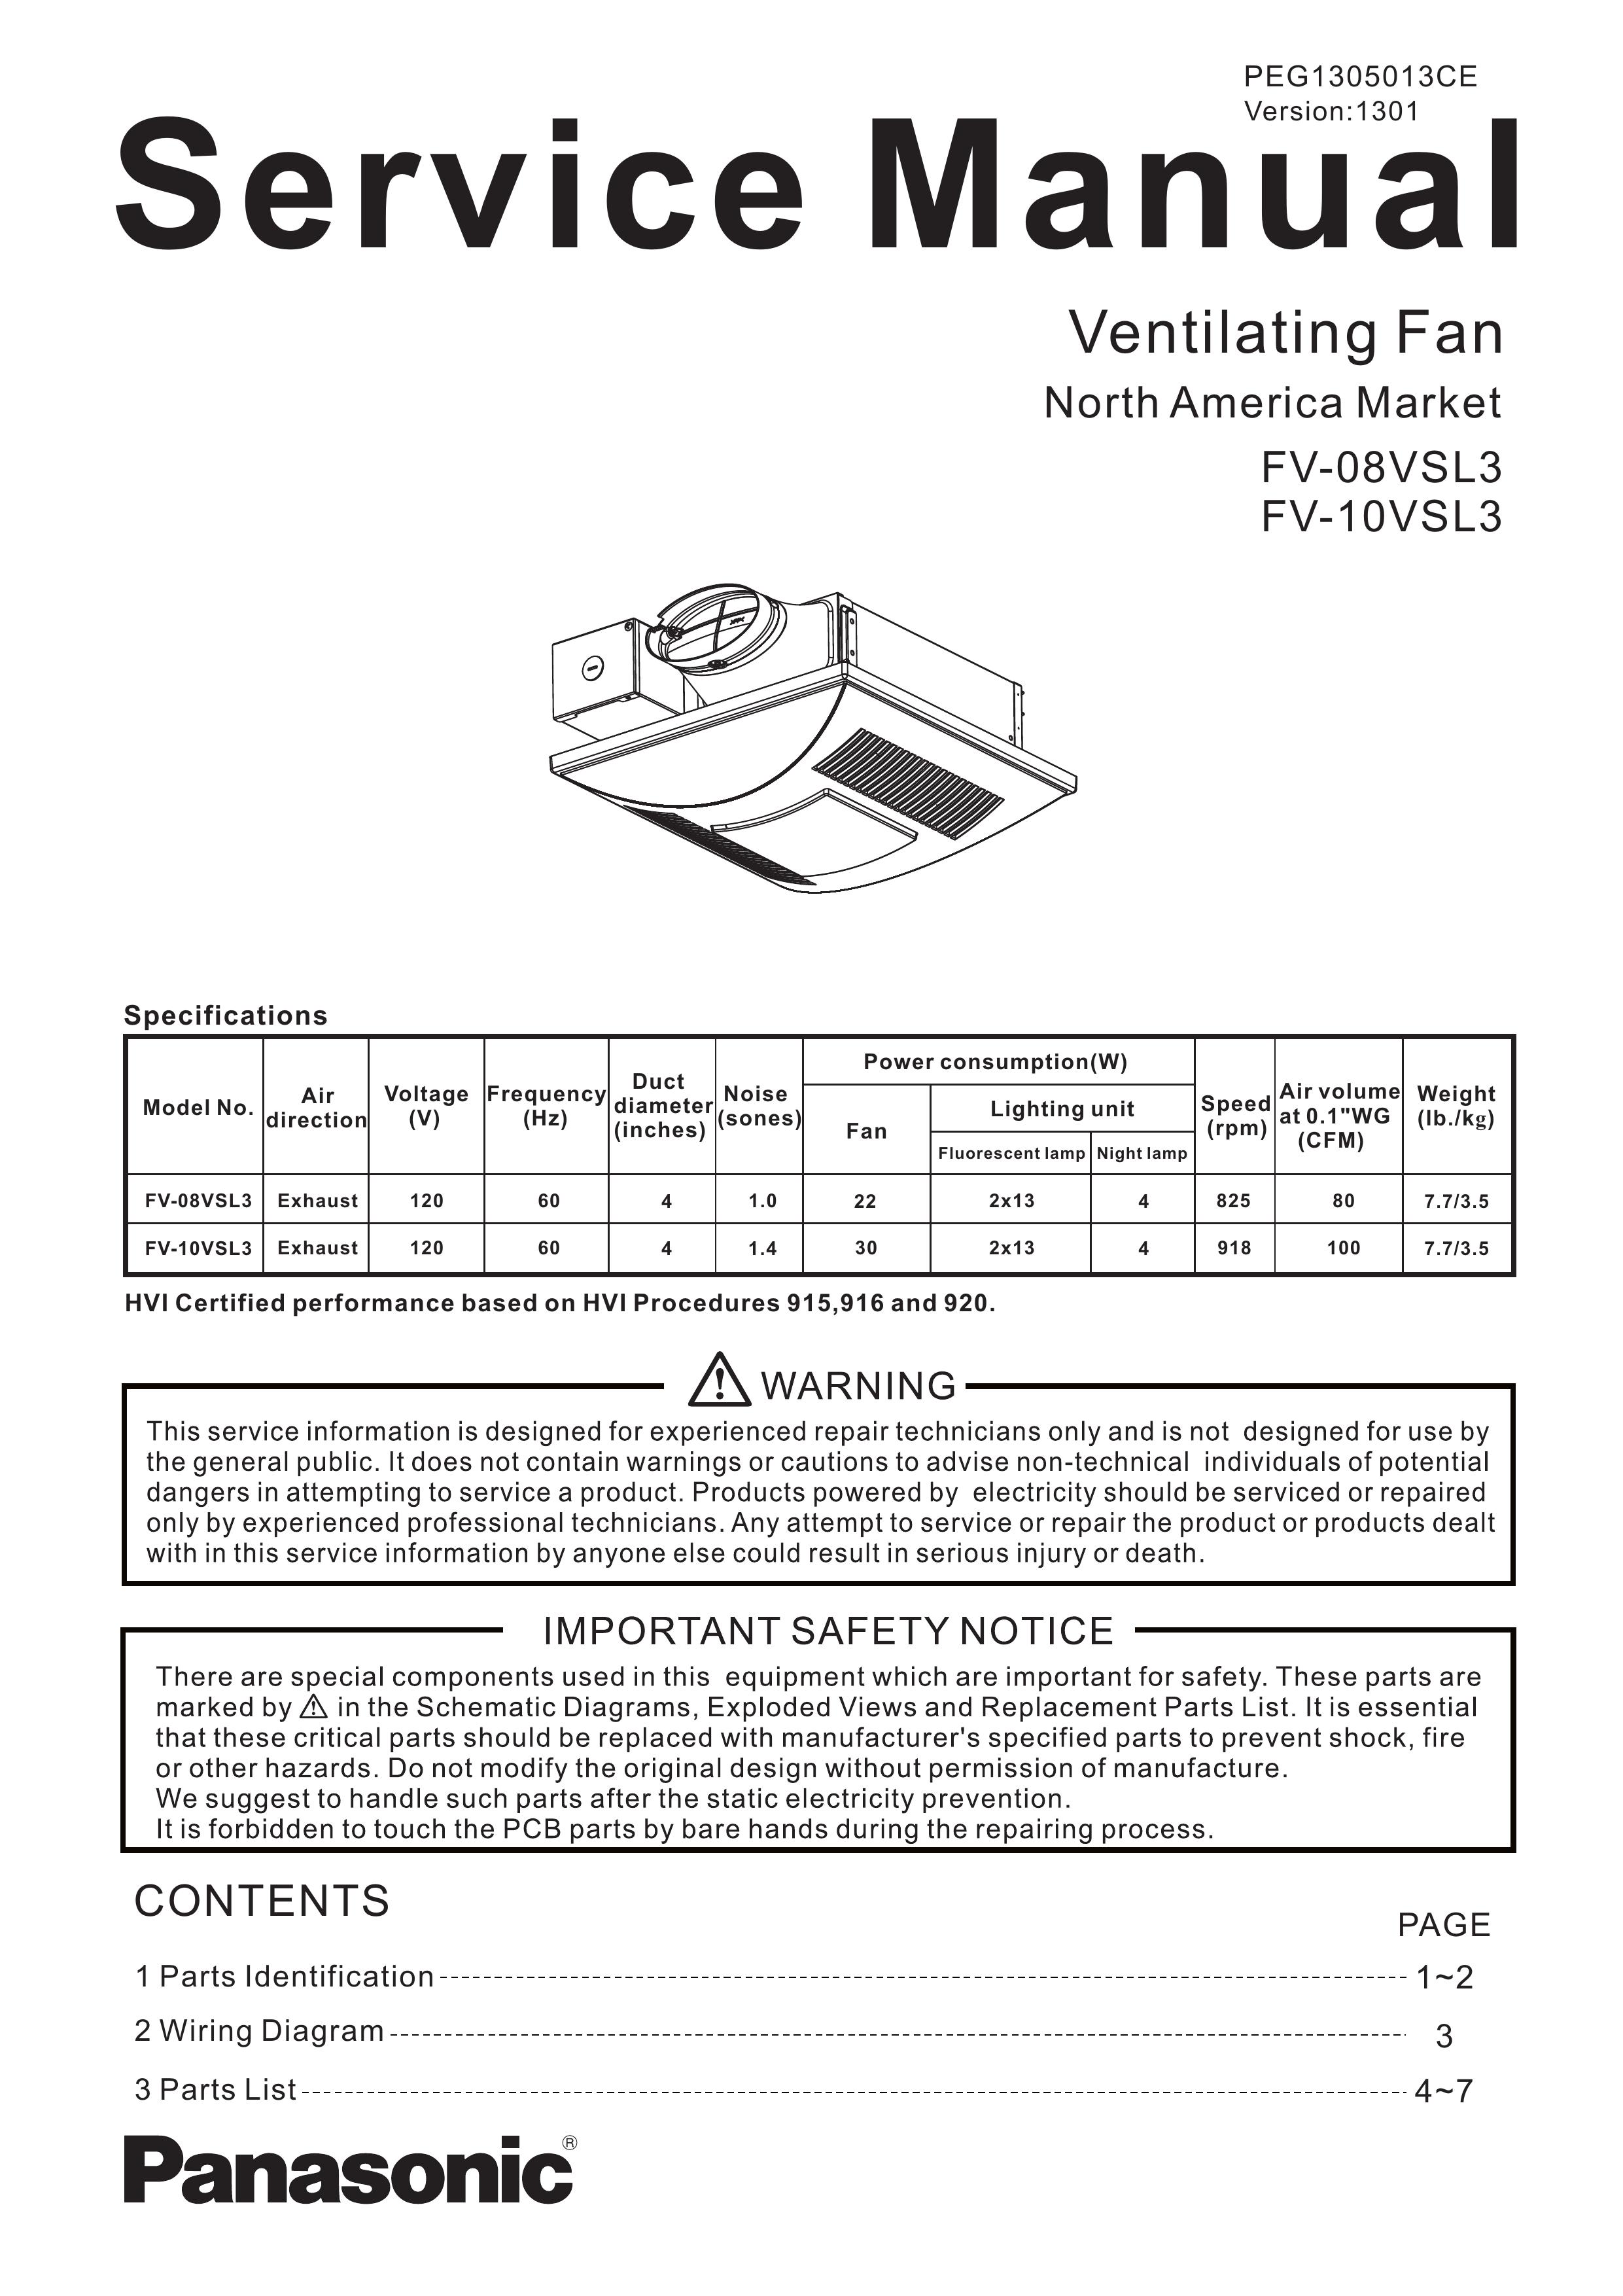 Panasonic FV-08VSL3 Ventilation Hood User Manual